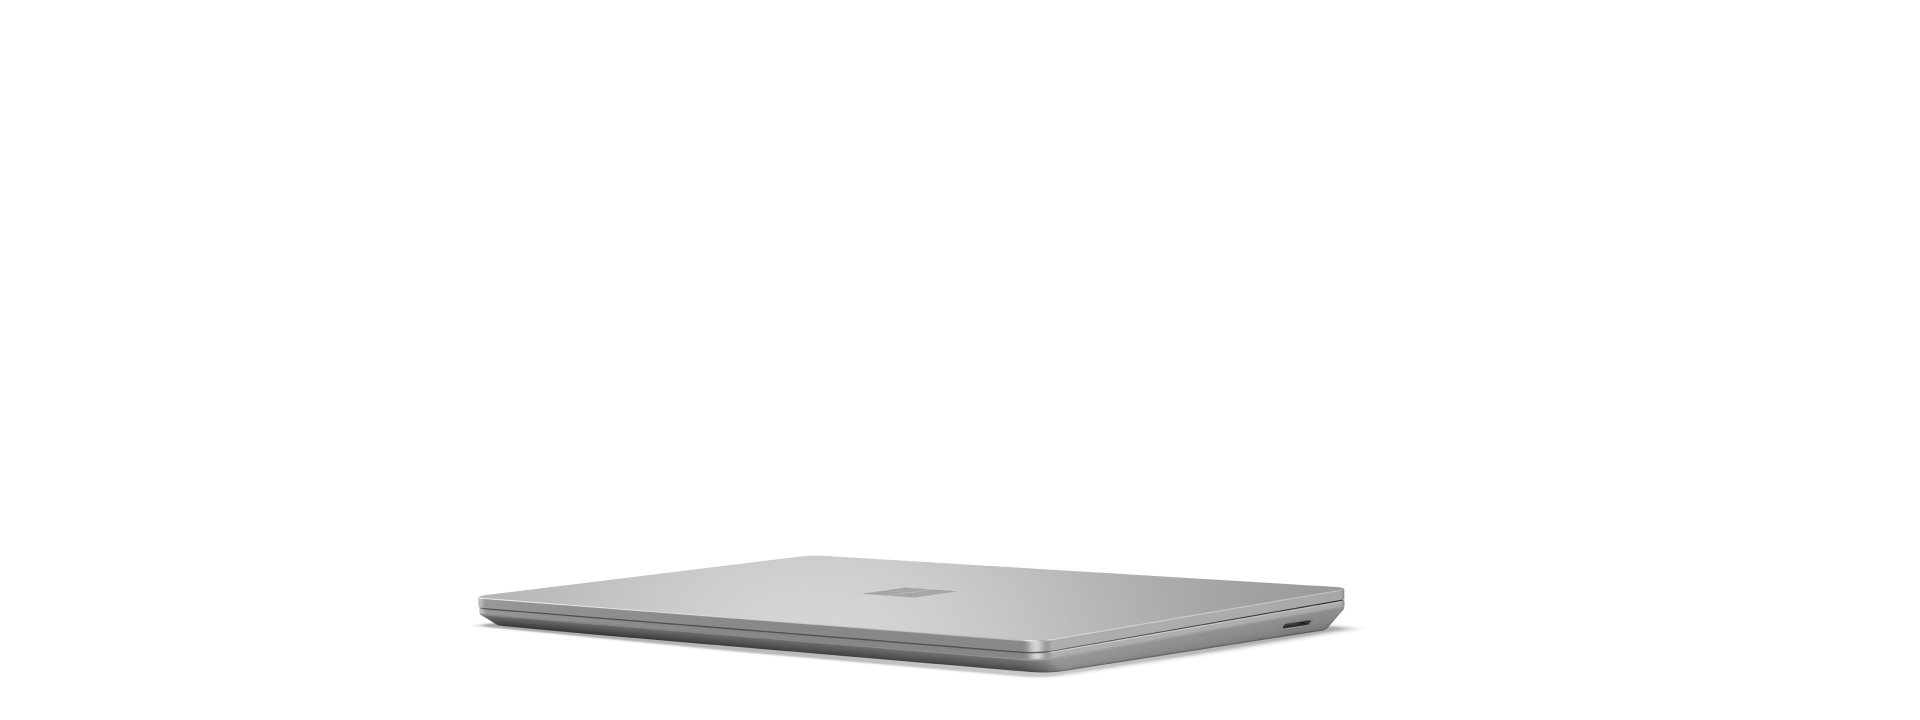 Startframe voor roterende Surface Laptop Go 3 die opent en sluit terwijl alle hoeken van het apparaat worden getoond.